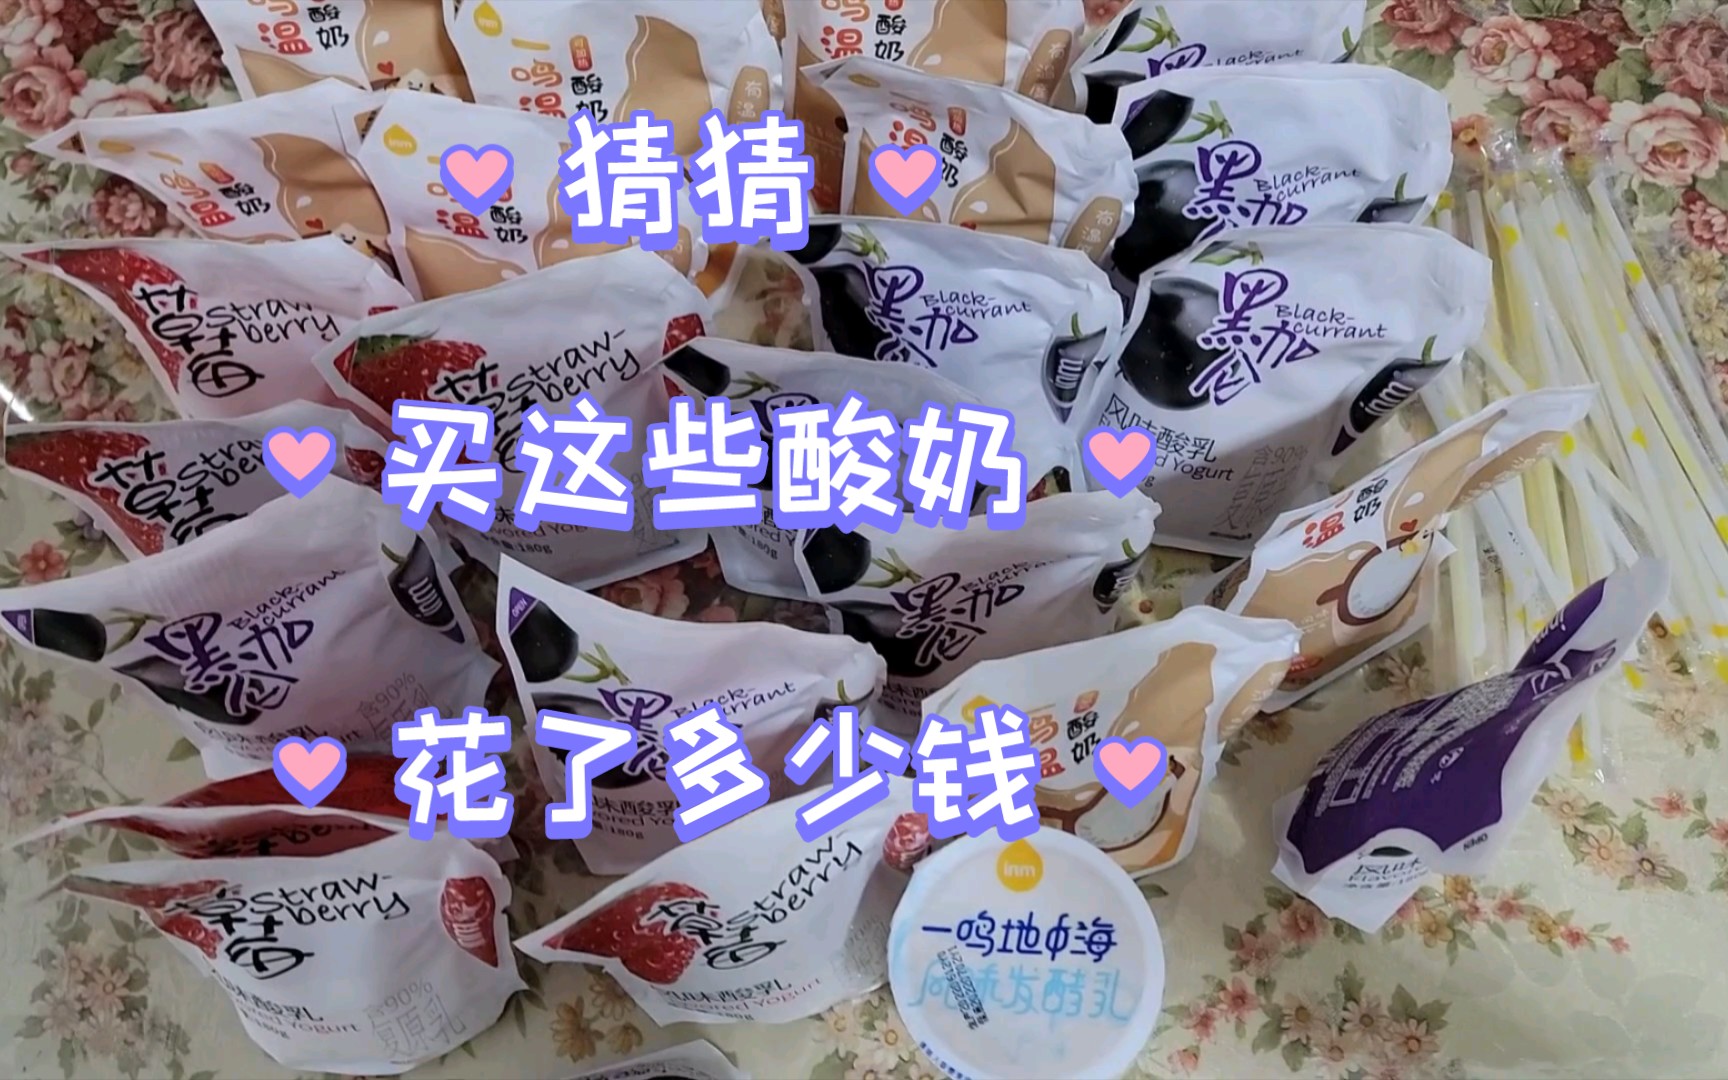 在一鸣真鲜奶吧买了三种口味25袋酸奶和一杯提拉米苏味酸奶，一共花了51元钱，大爱南京消费券！